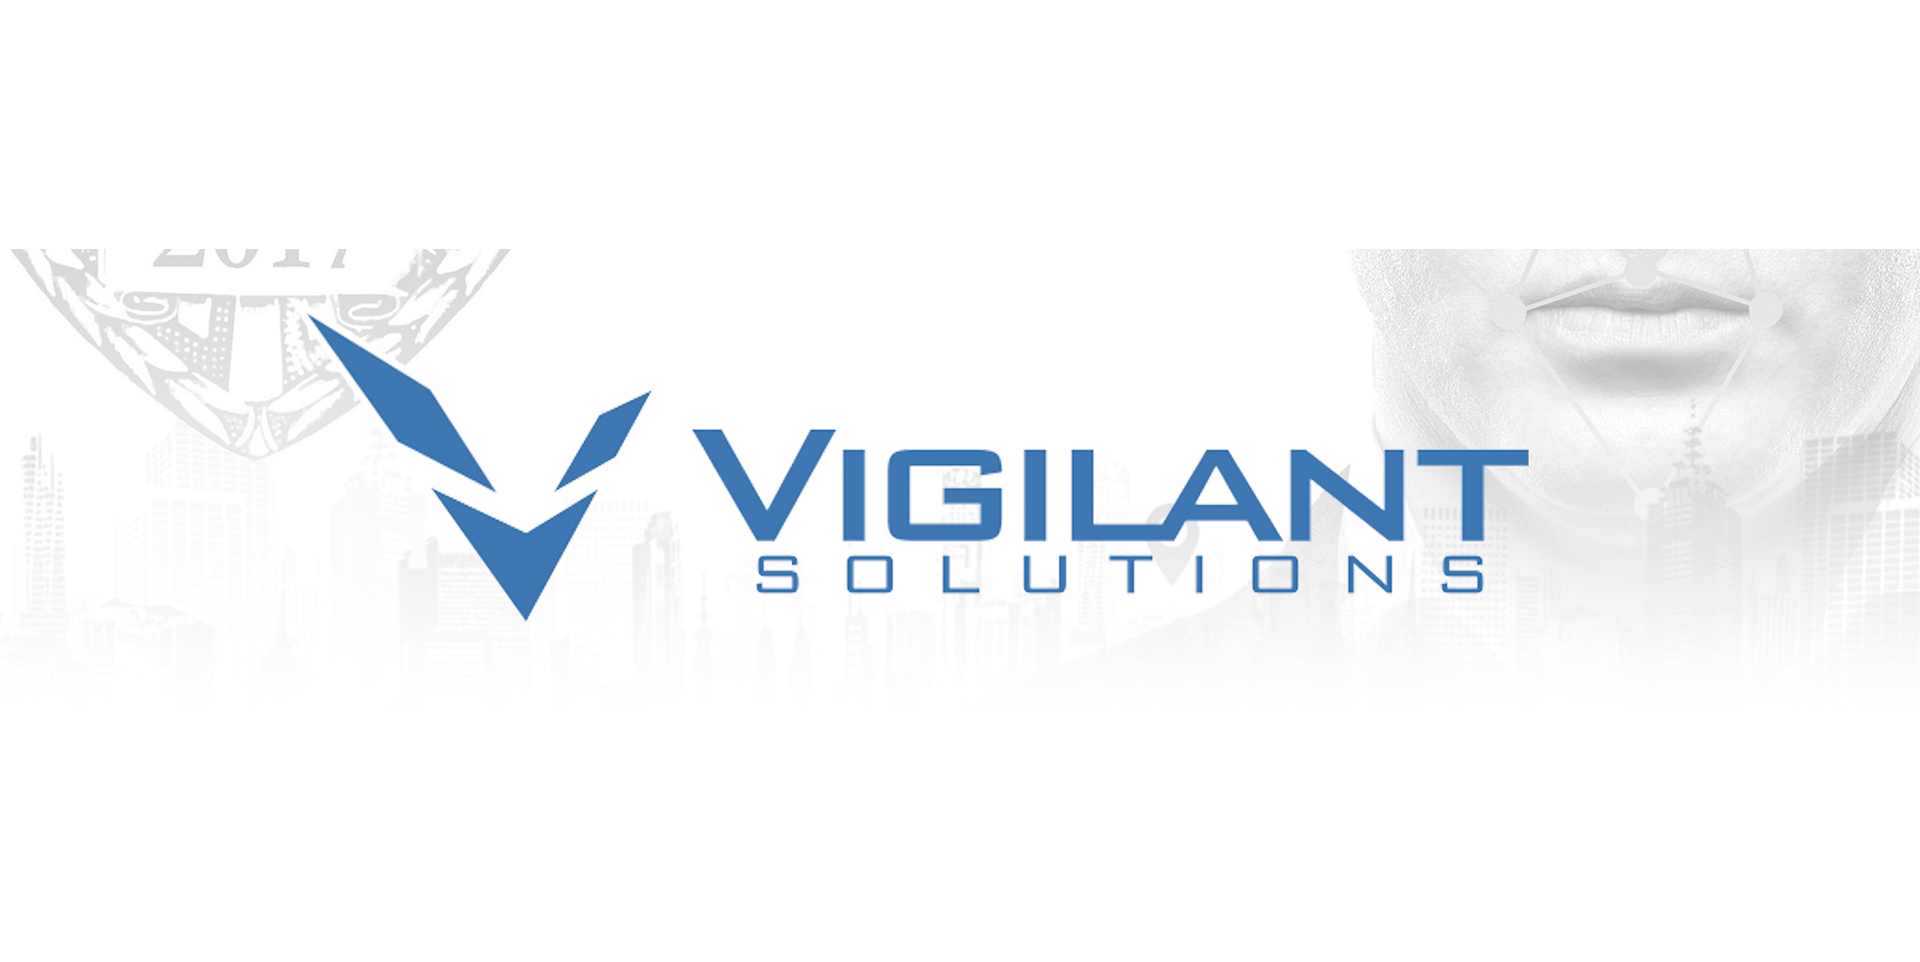 Events - Vigilant Solutions